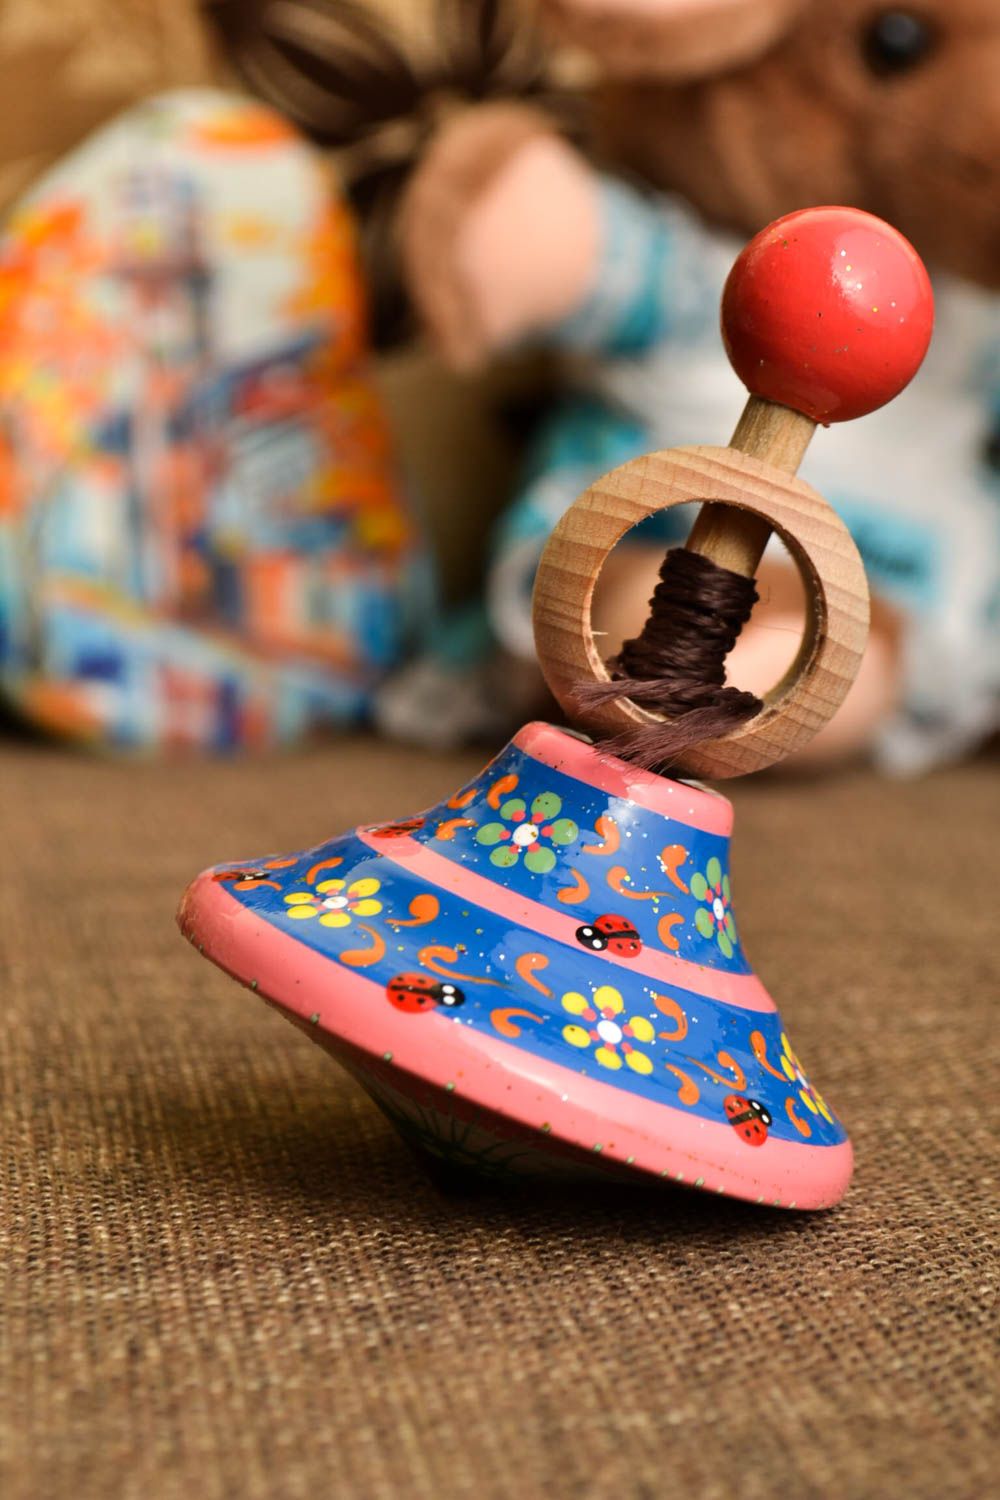 Детская юла игрушка ручной работы игрушка из натурального материала необычная фото 1